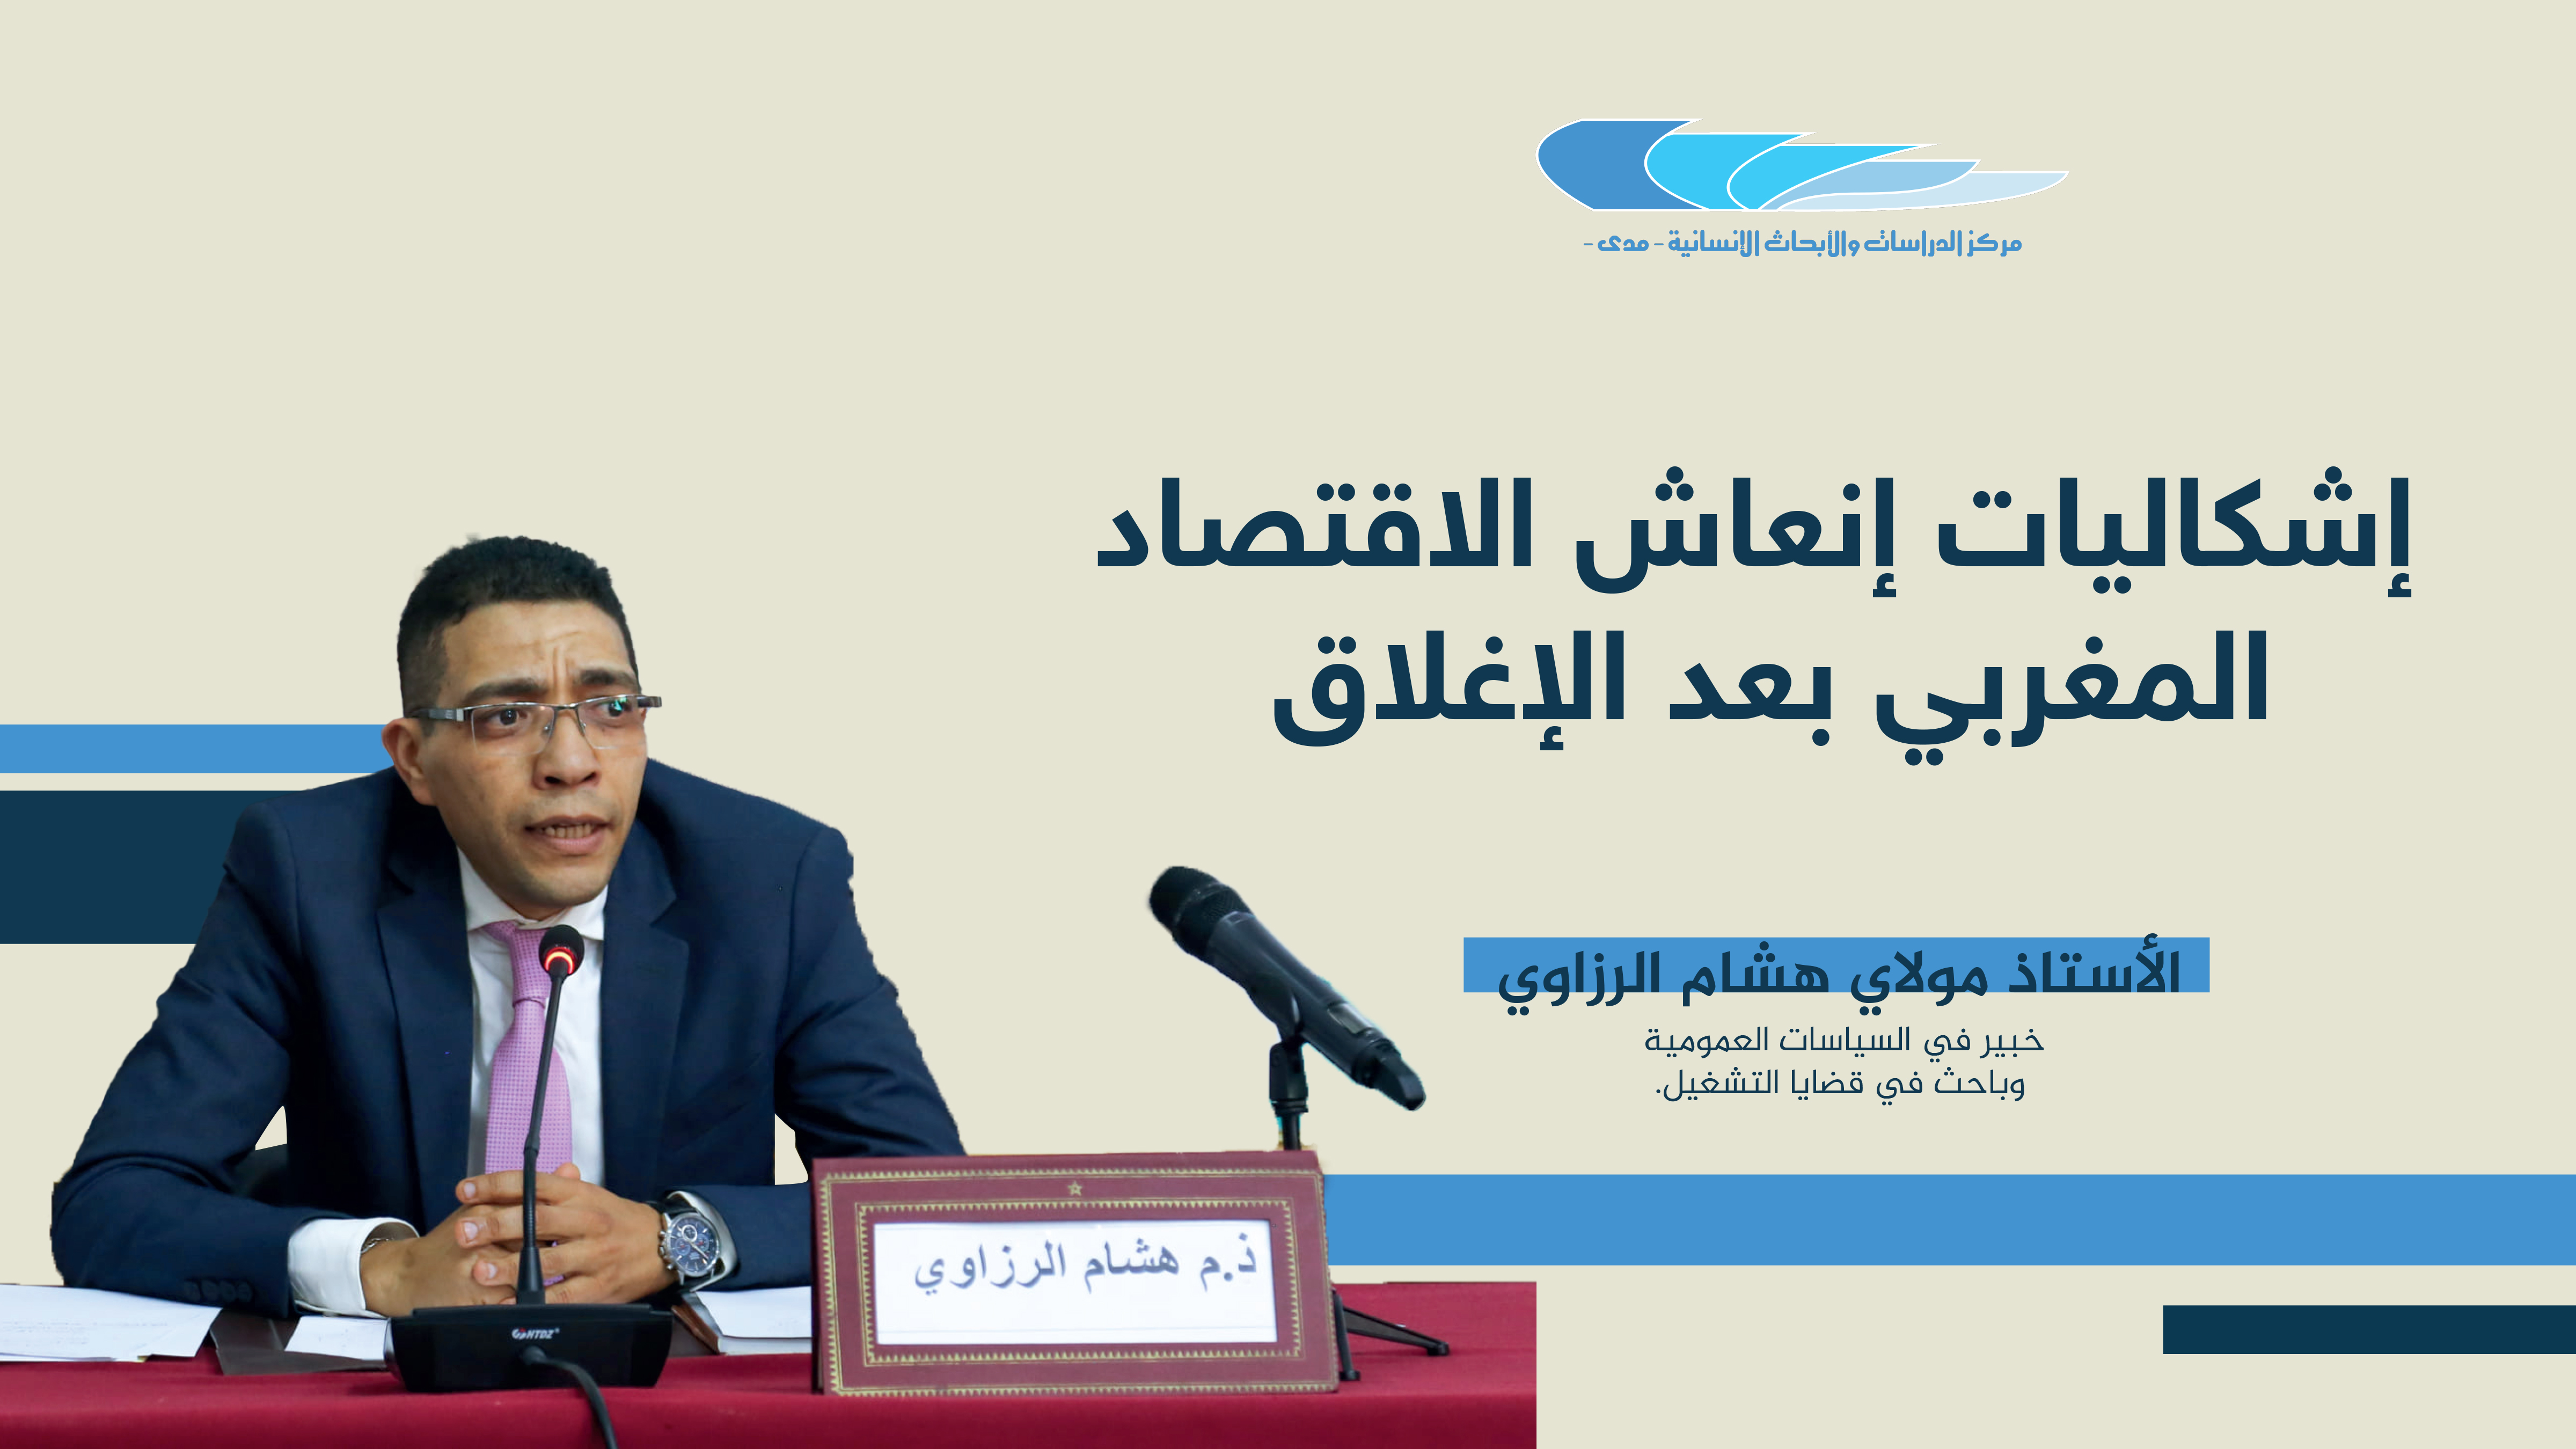 إشكاليات إنعاش الاقتصاد المغربي بعد الإغلاق-الأستاذ مولاي هشام الرزاوي